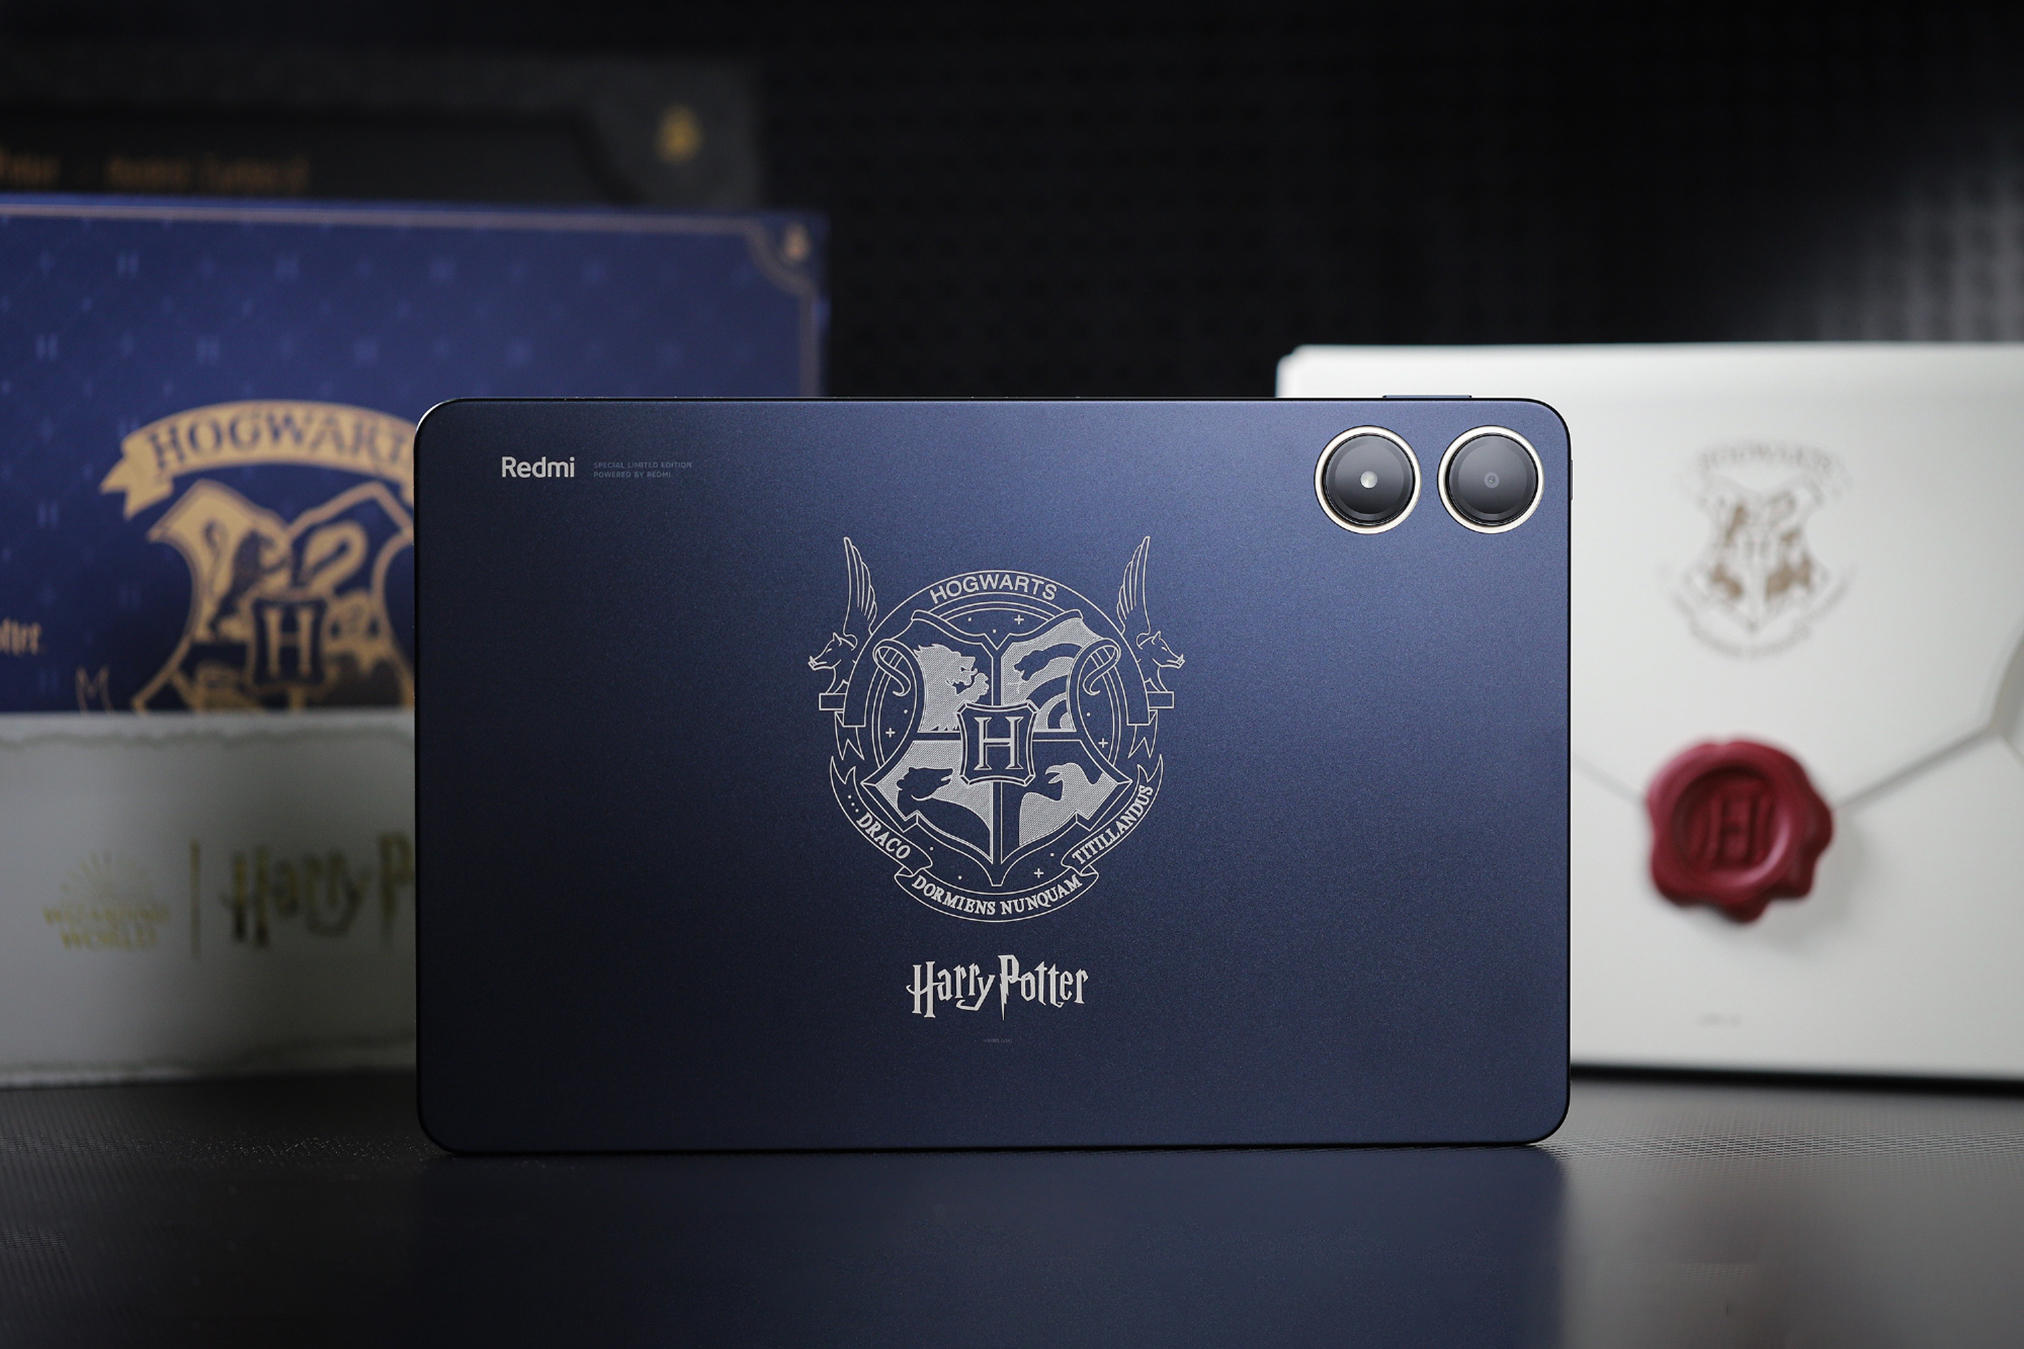 Cận cảnh máy tính bảng 12 inch giá rẻ chỉ 5 triệu đồng của Xiaomi: Thiết kế đẹp như iPad, có cả bản Harry Potter đặc biệt cho các Potterheads, pin khủng 10.000mAh- Ảnh 18.